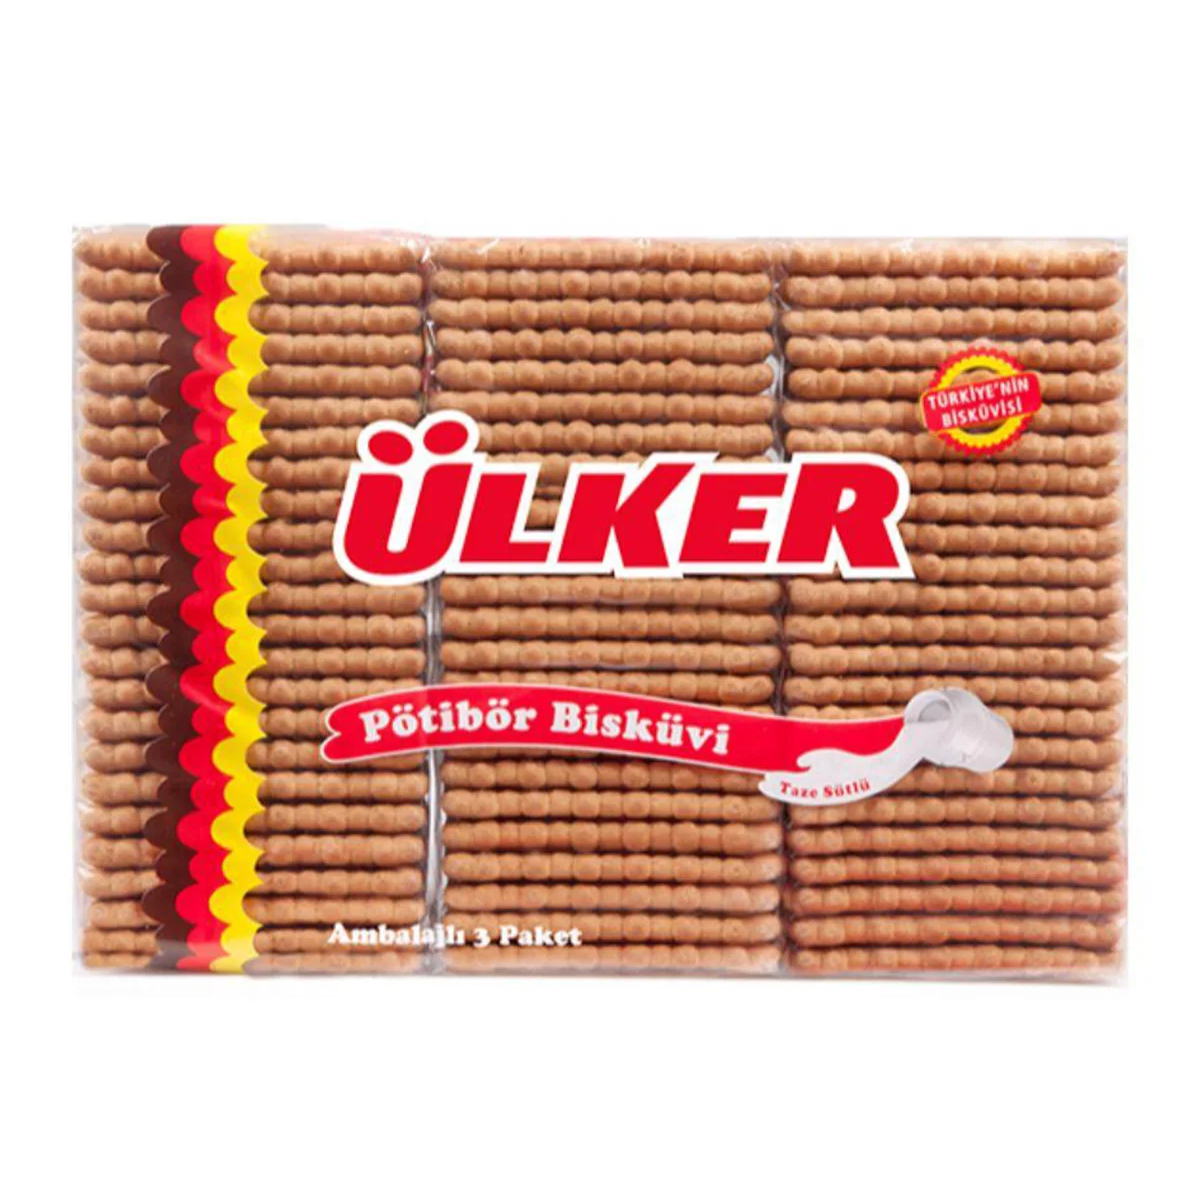 Печенье Ulker Petit Beurre, 450 г печенье сэндвич ulker в шоколаде с кремом шелковицы